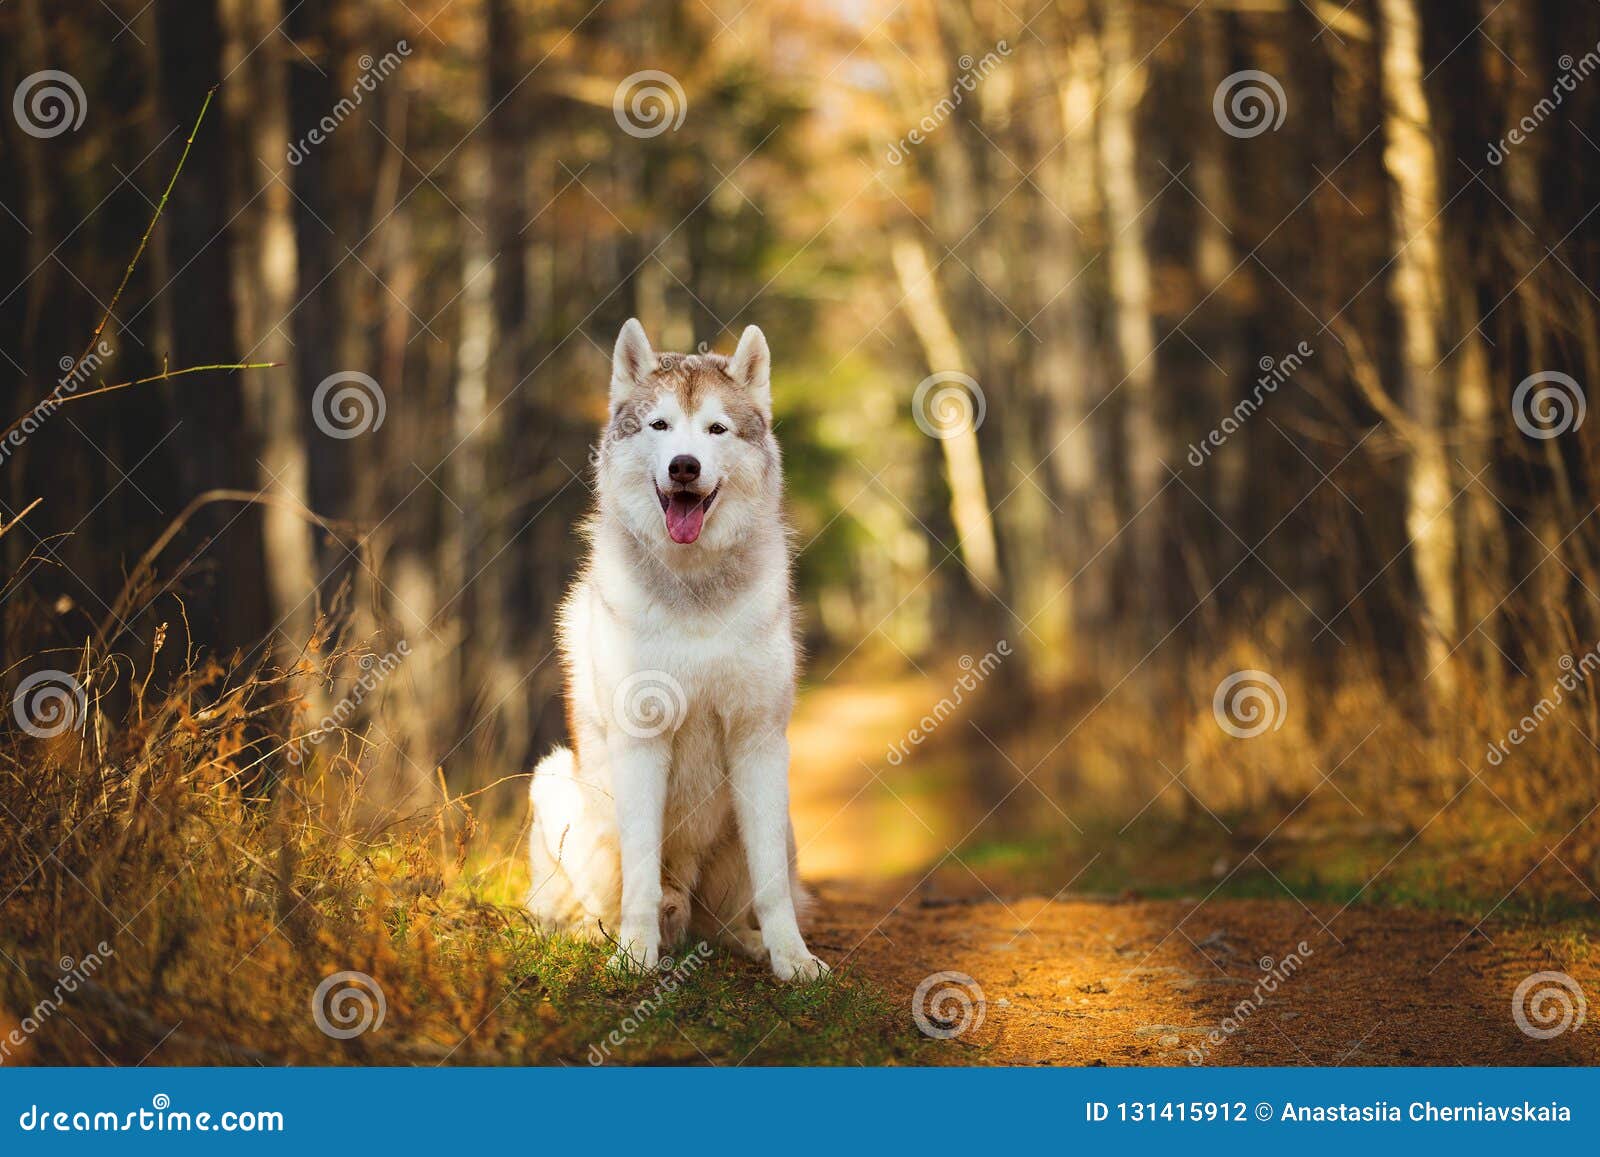 Πορτρέτο της πανέμορφης, ευτυχούς, ελεύθερης και περήφανης μπεζ και άσπρης σιβηρικής γεροδεμένης συνεδρίασης φυλής σκυλιών στο φωτεινό δάσος φθινοπώρου στο χρυσό ηλιοβασίλεμα